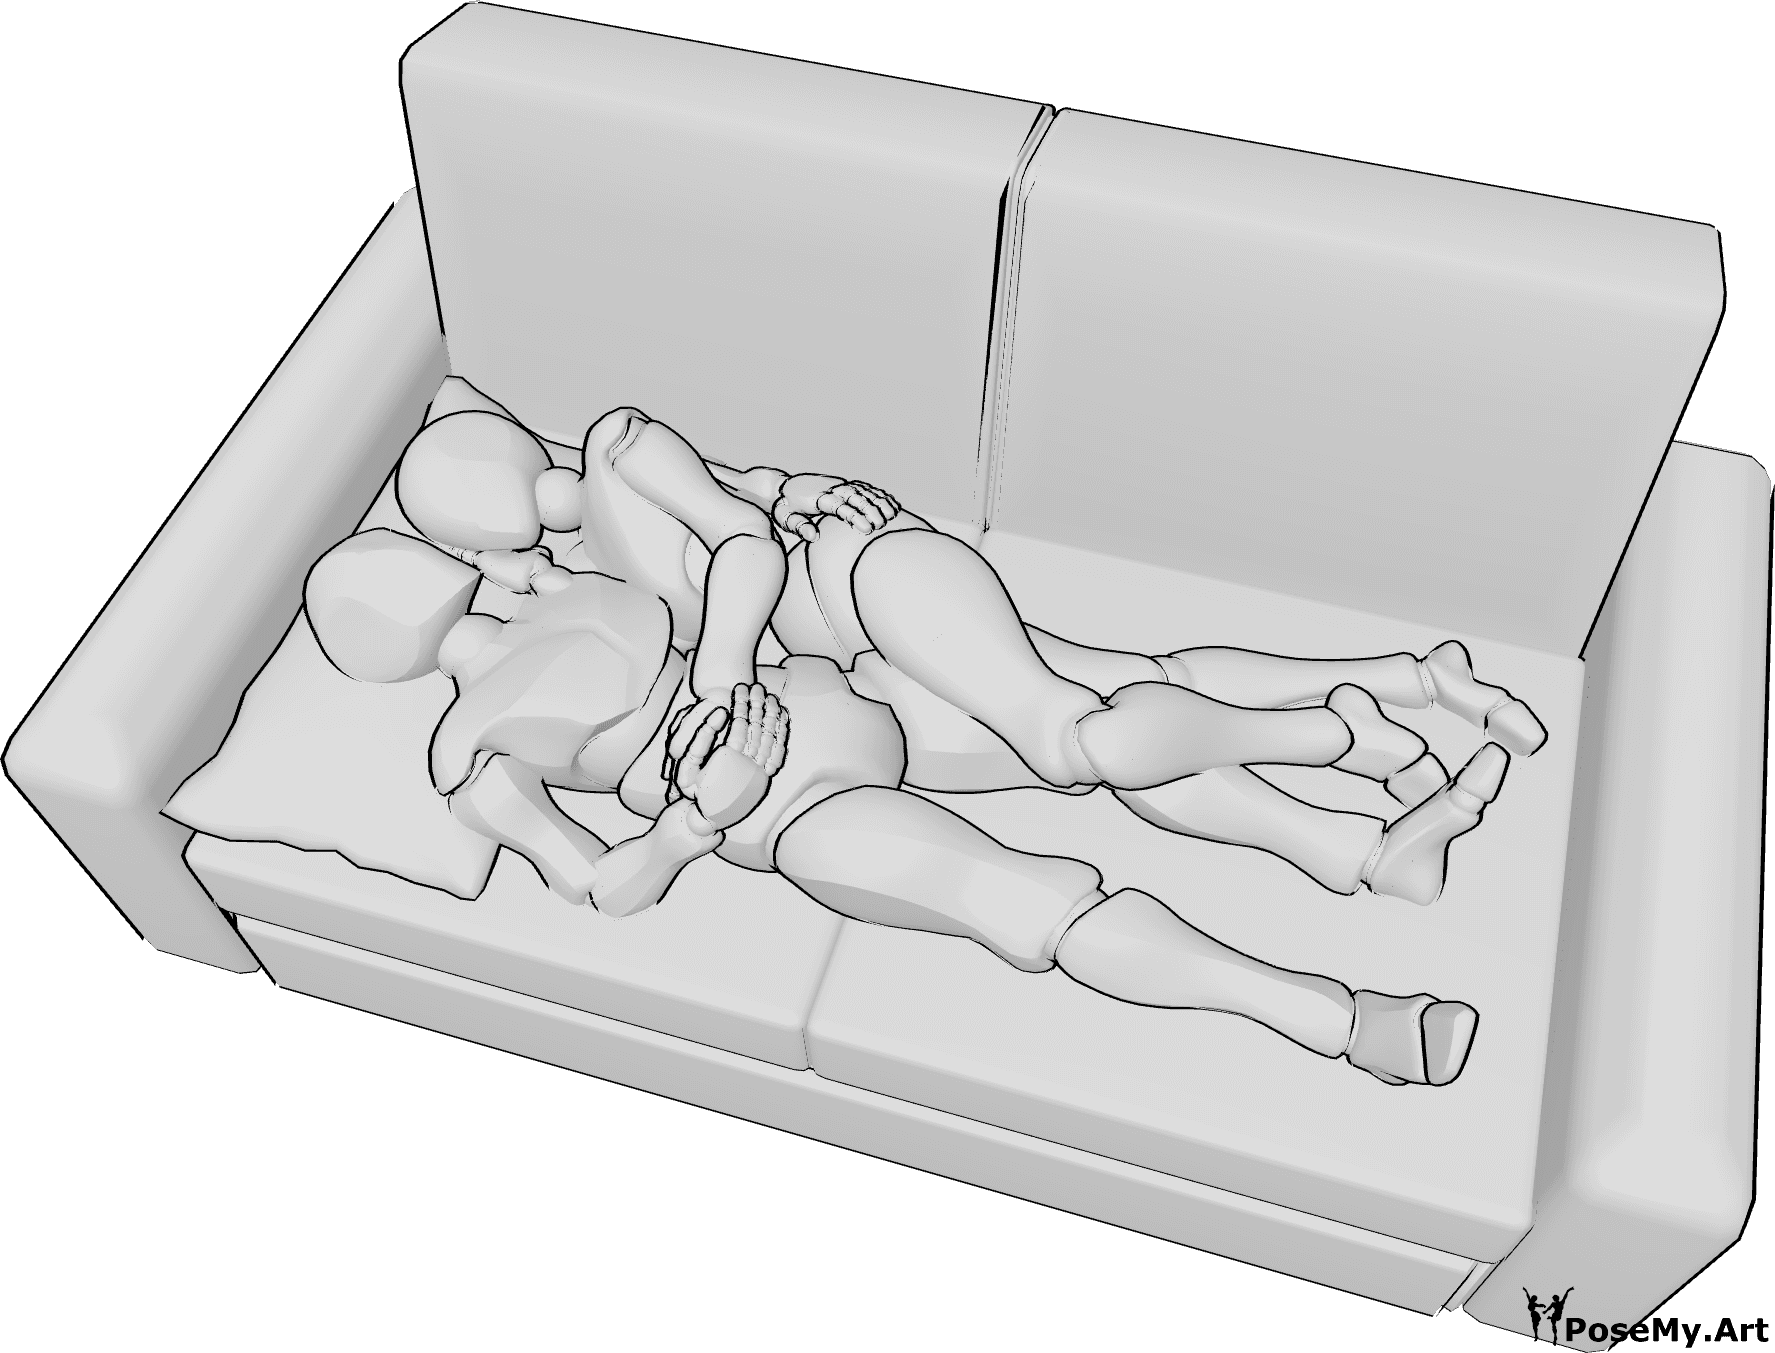 Posen-Referenz- Liegende Kuschelpose - Frau und Mann liegen auf der Couch und kuscheln, umarmen sich gegenseitig